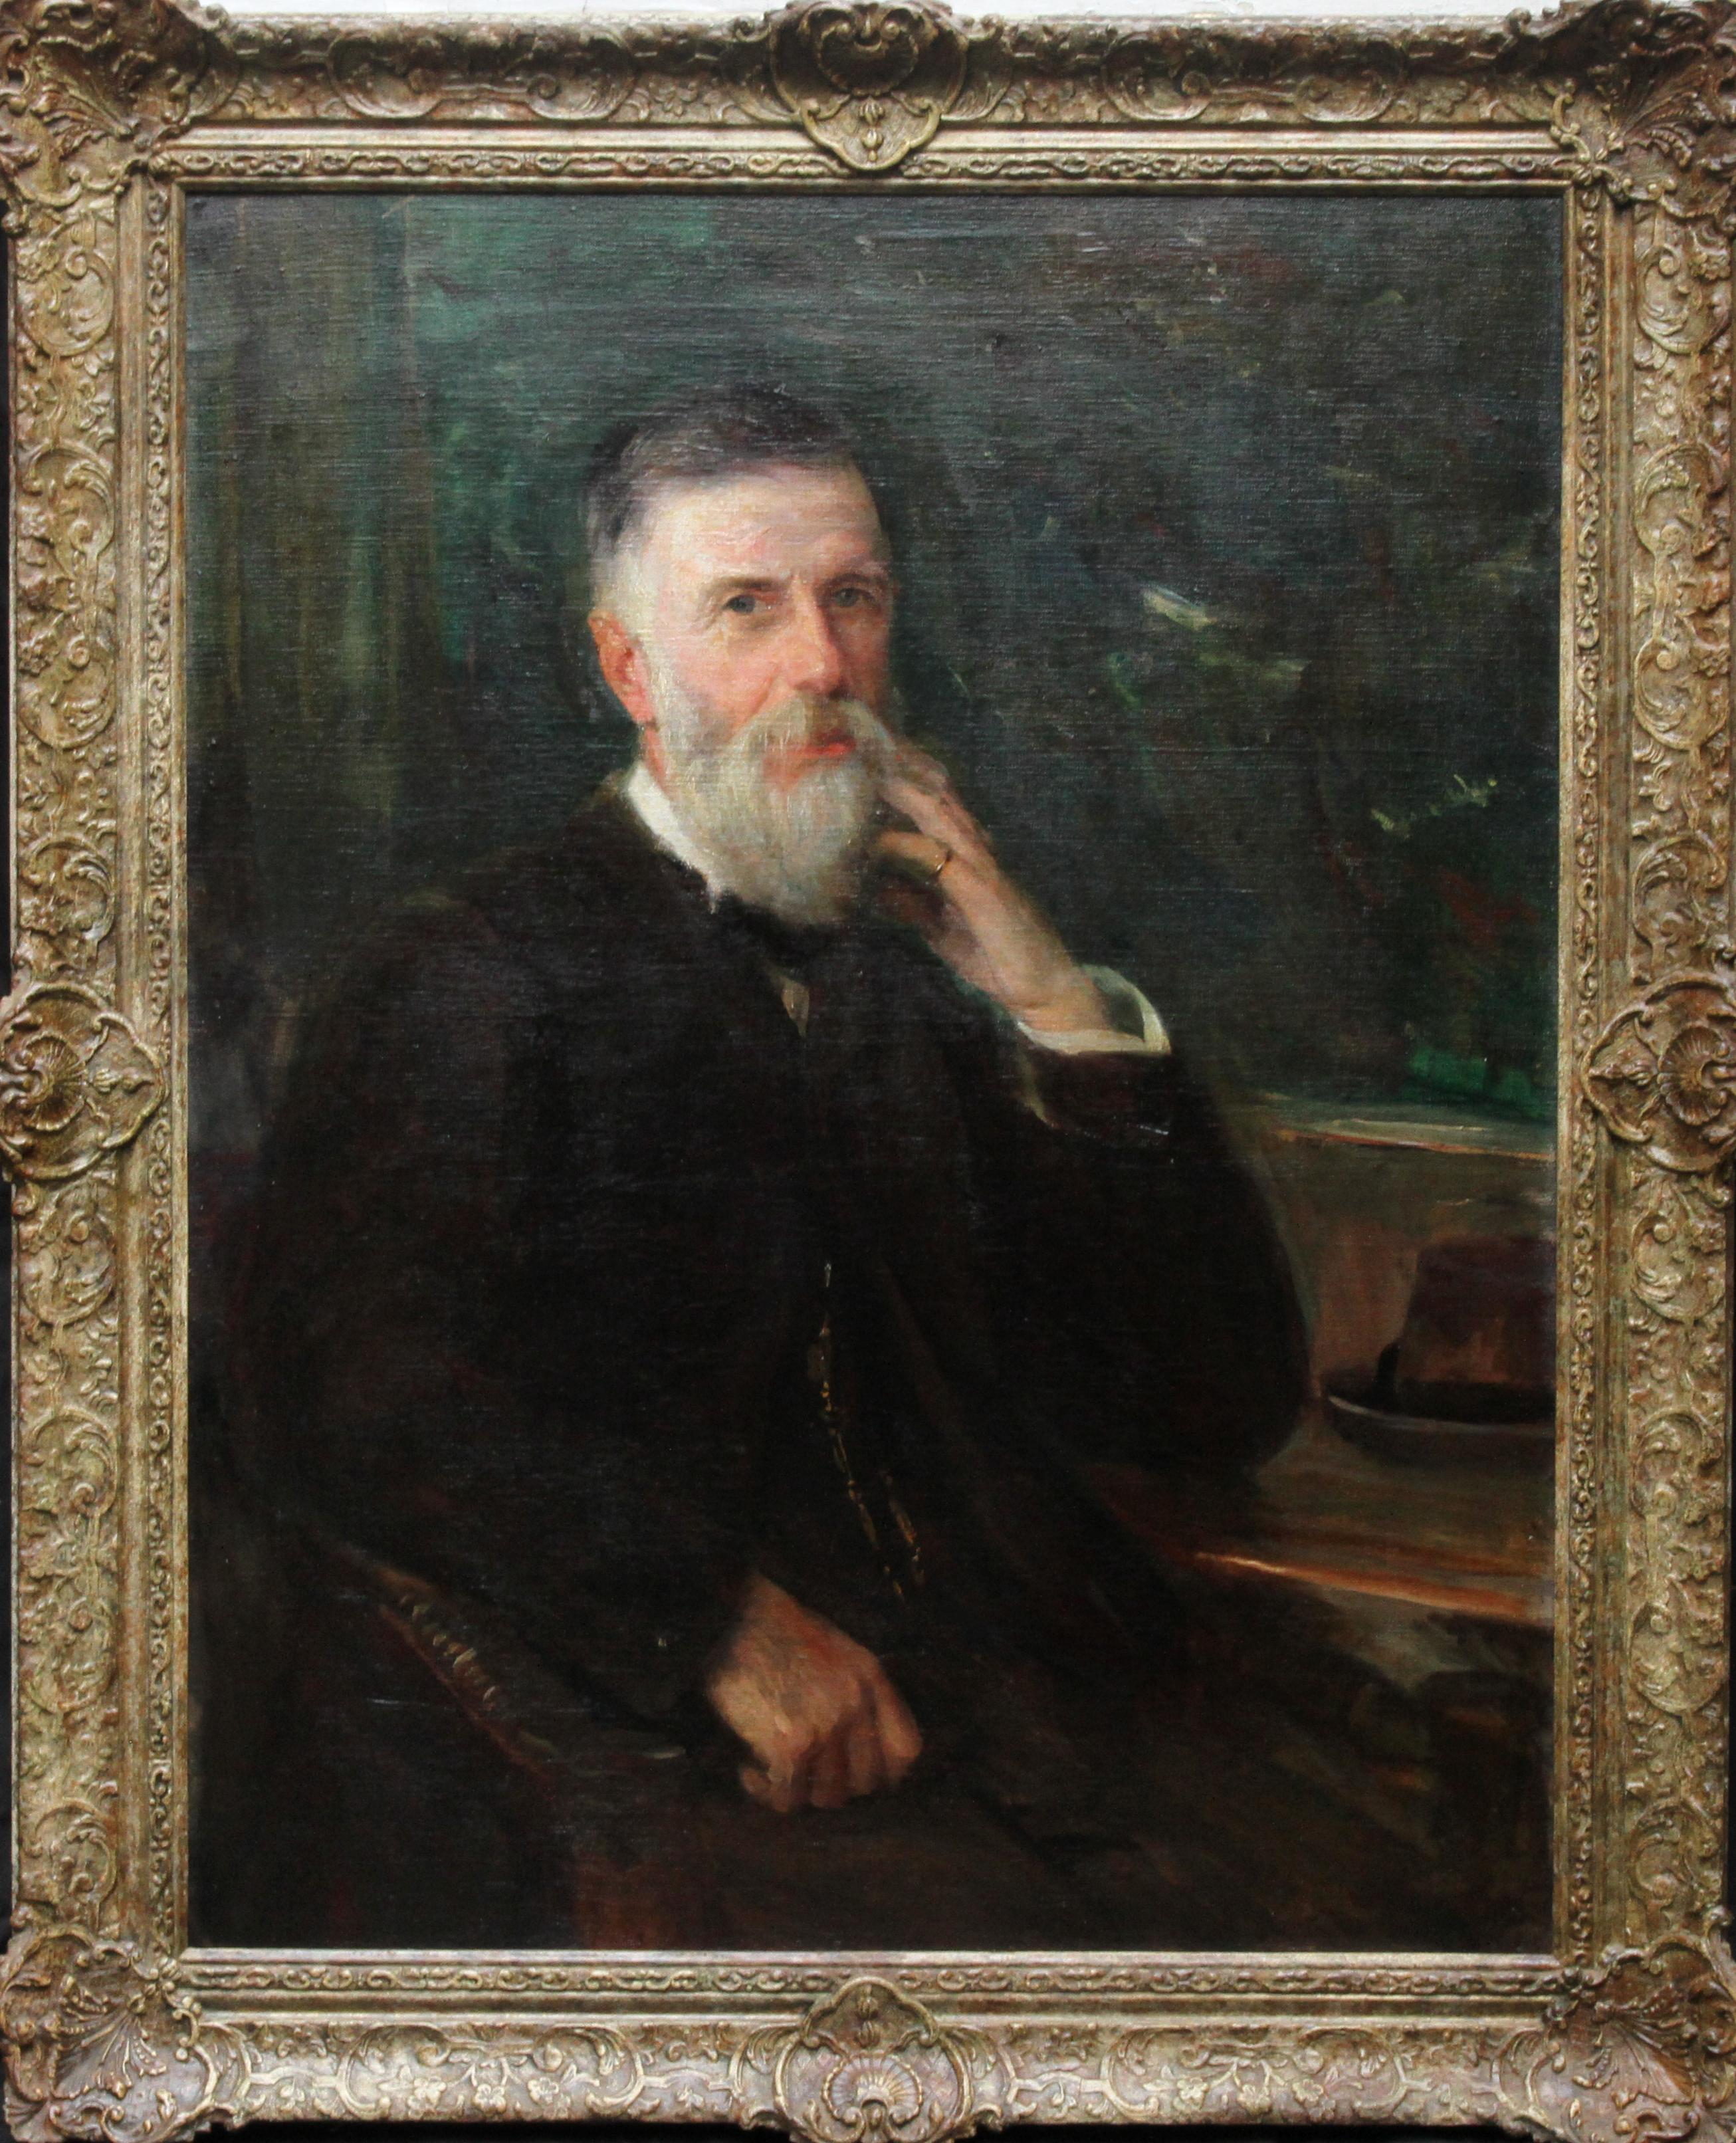 Unknown Portrait Painting – Portrait of William Broom - Scottish Edwardian art male portrait oil painting